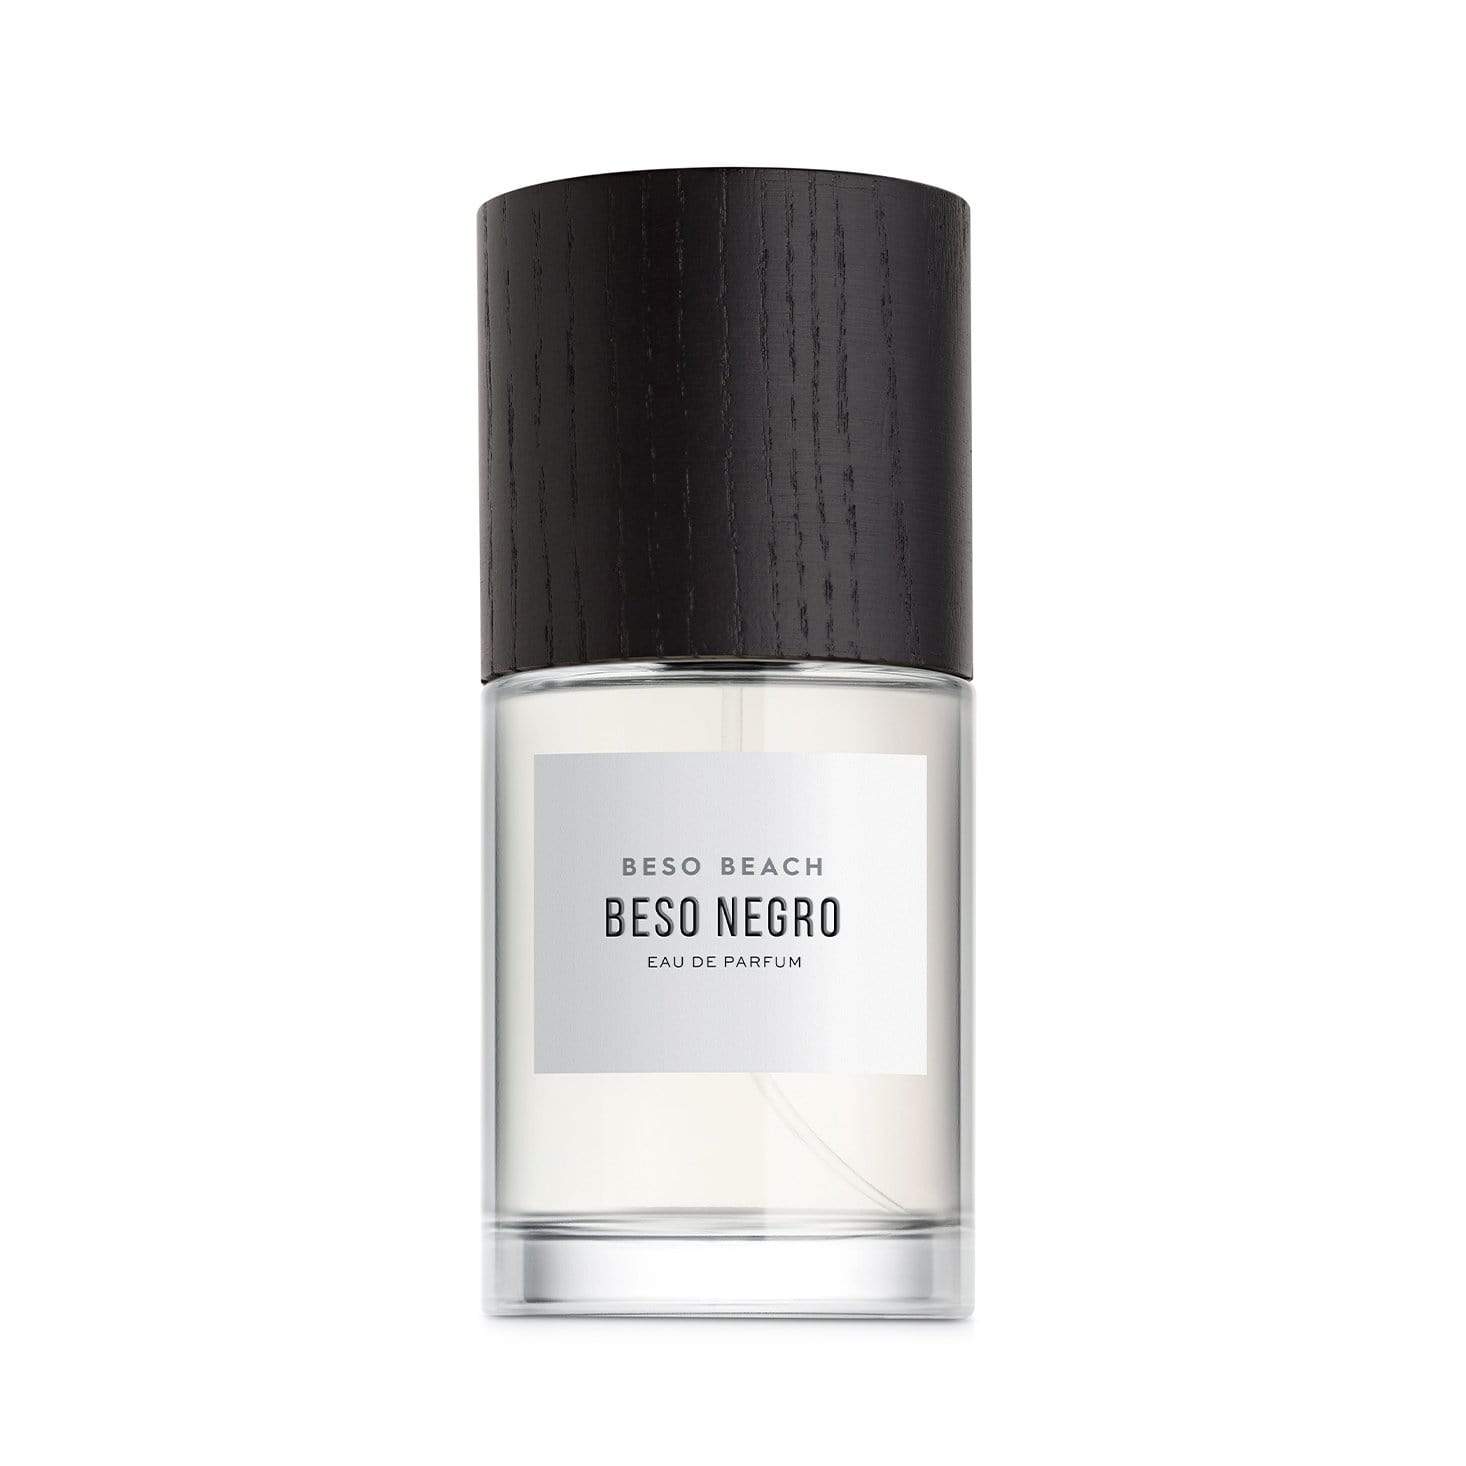 Beso Negro Eau de Parfum - Men's Fragrance at Menzclub